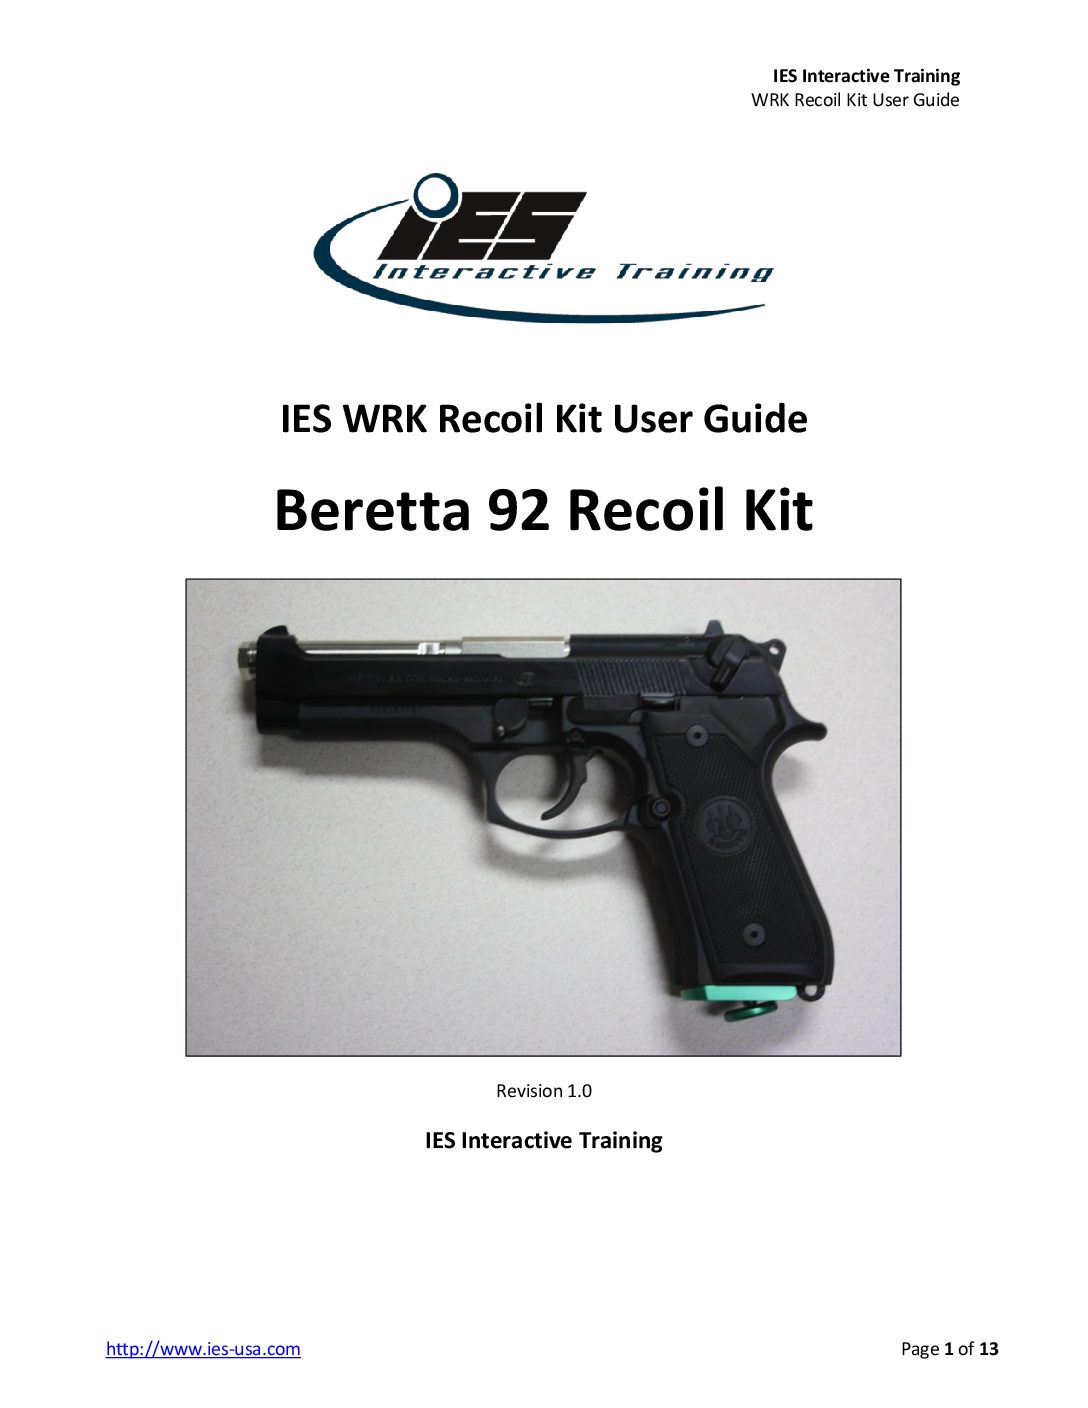 Beretta 92 WRK Recoil Kit User Guide